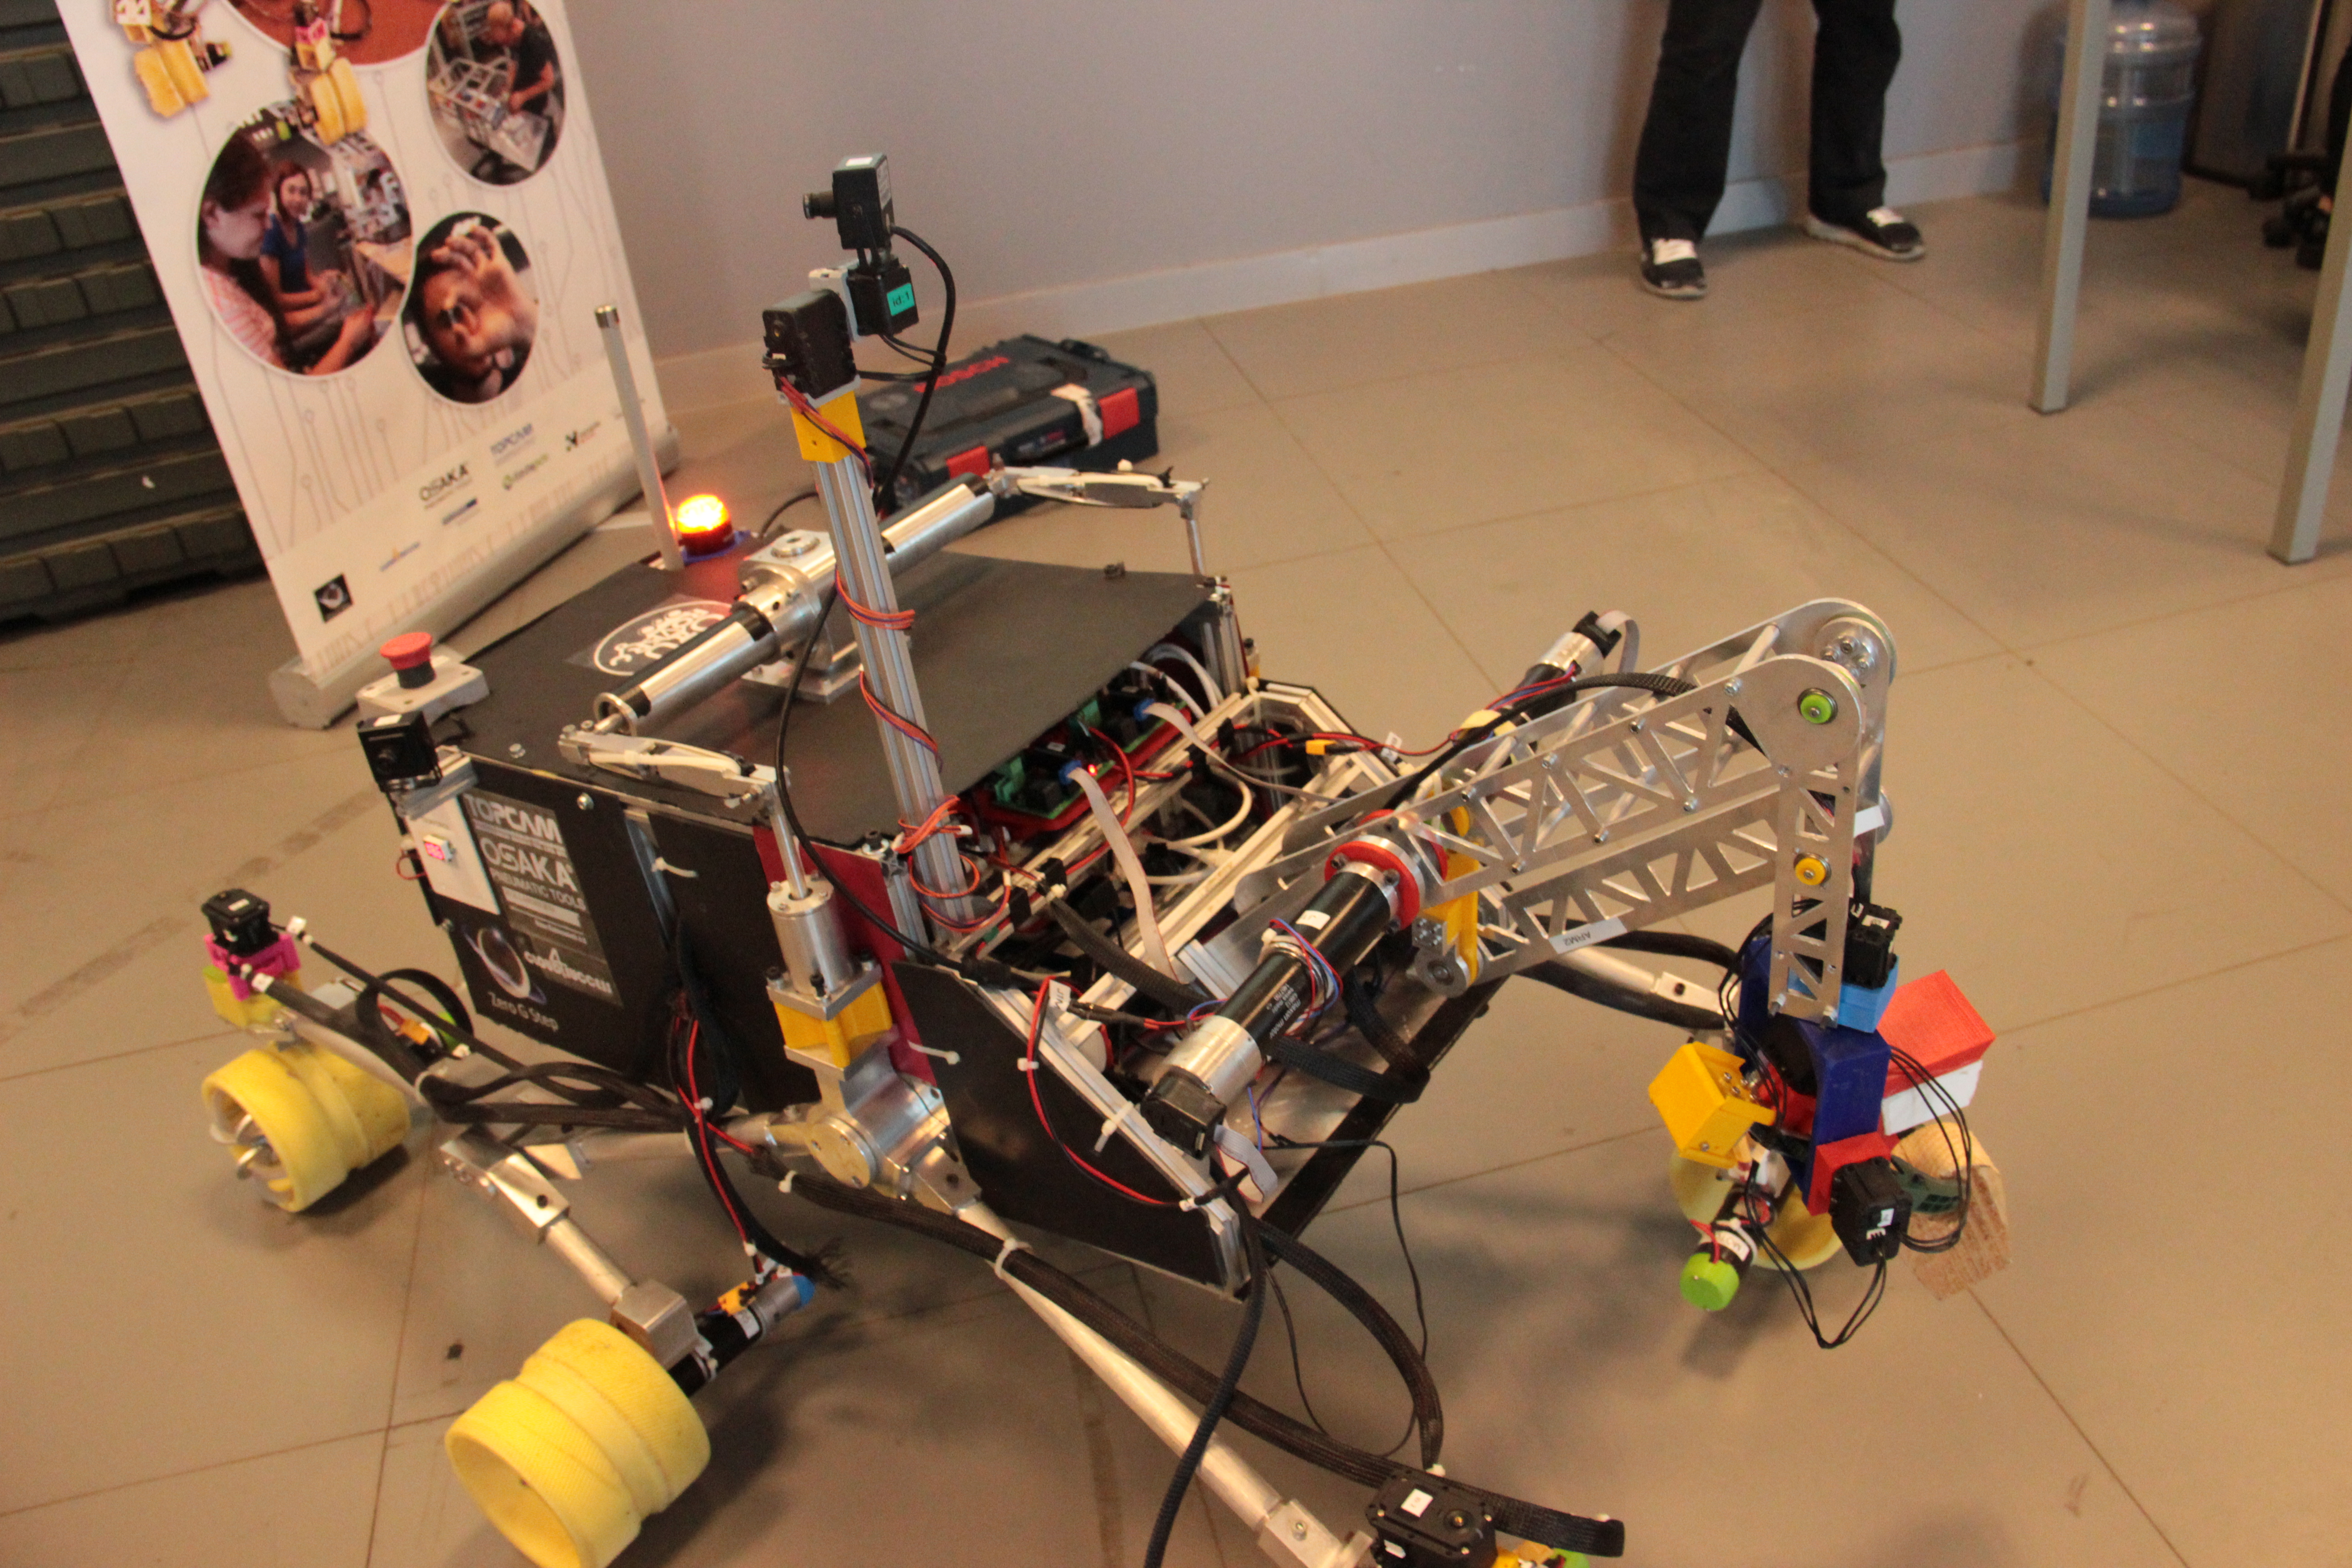 Özyeğin Üniversitesi öğrencilerinin tasarladığı mars robotu ikinci kez Türkiye’den katılan tek takım olarak Polonya’da yarışacak-1149